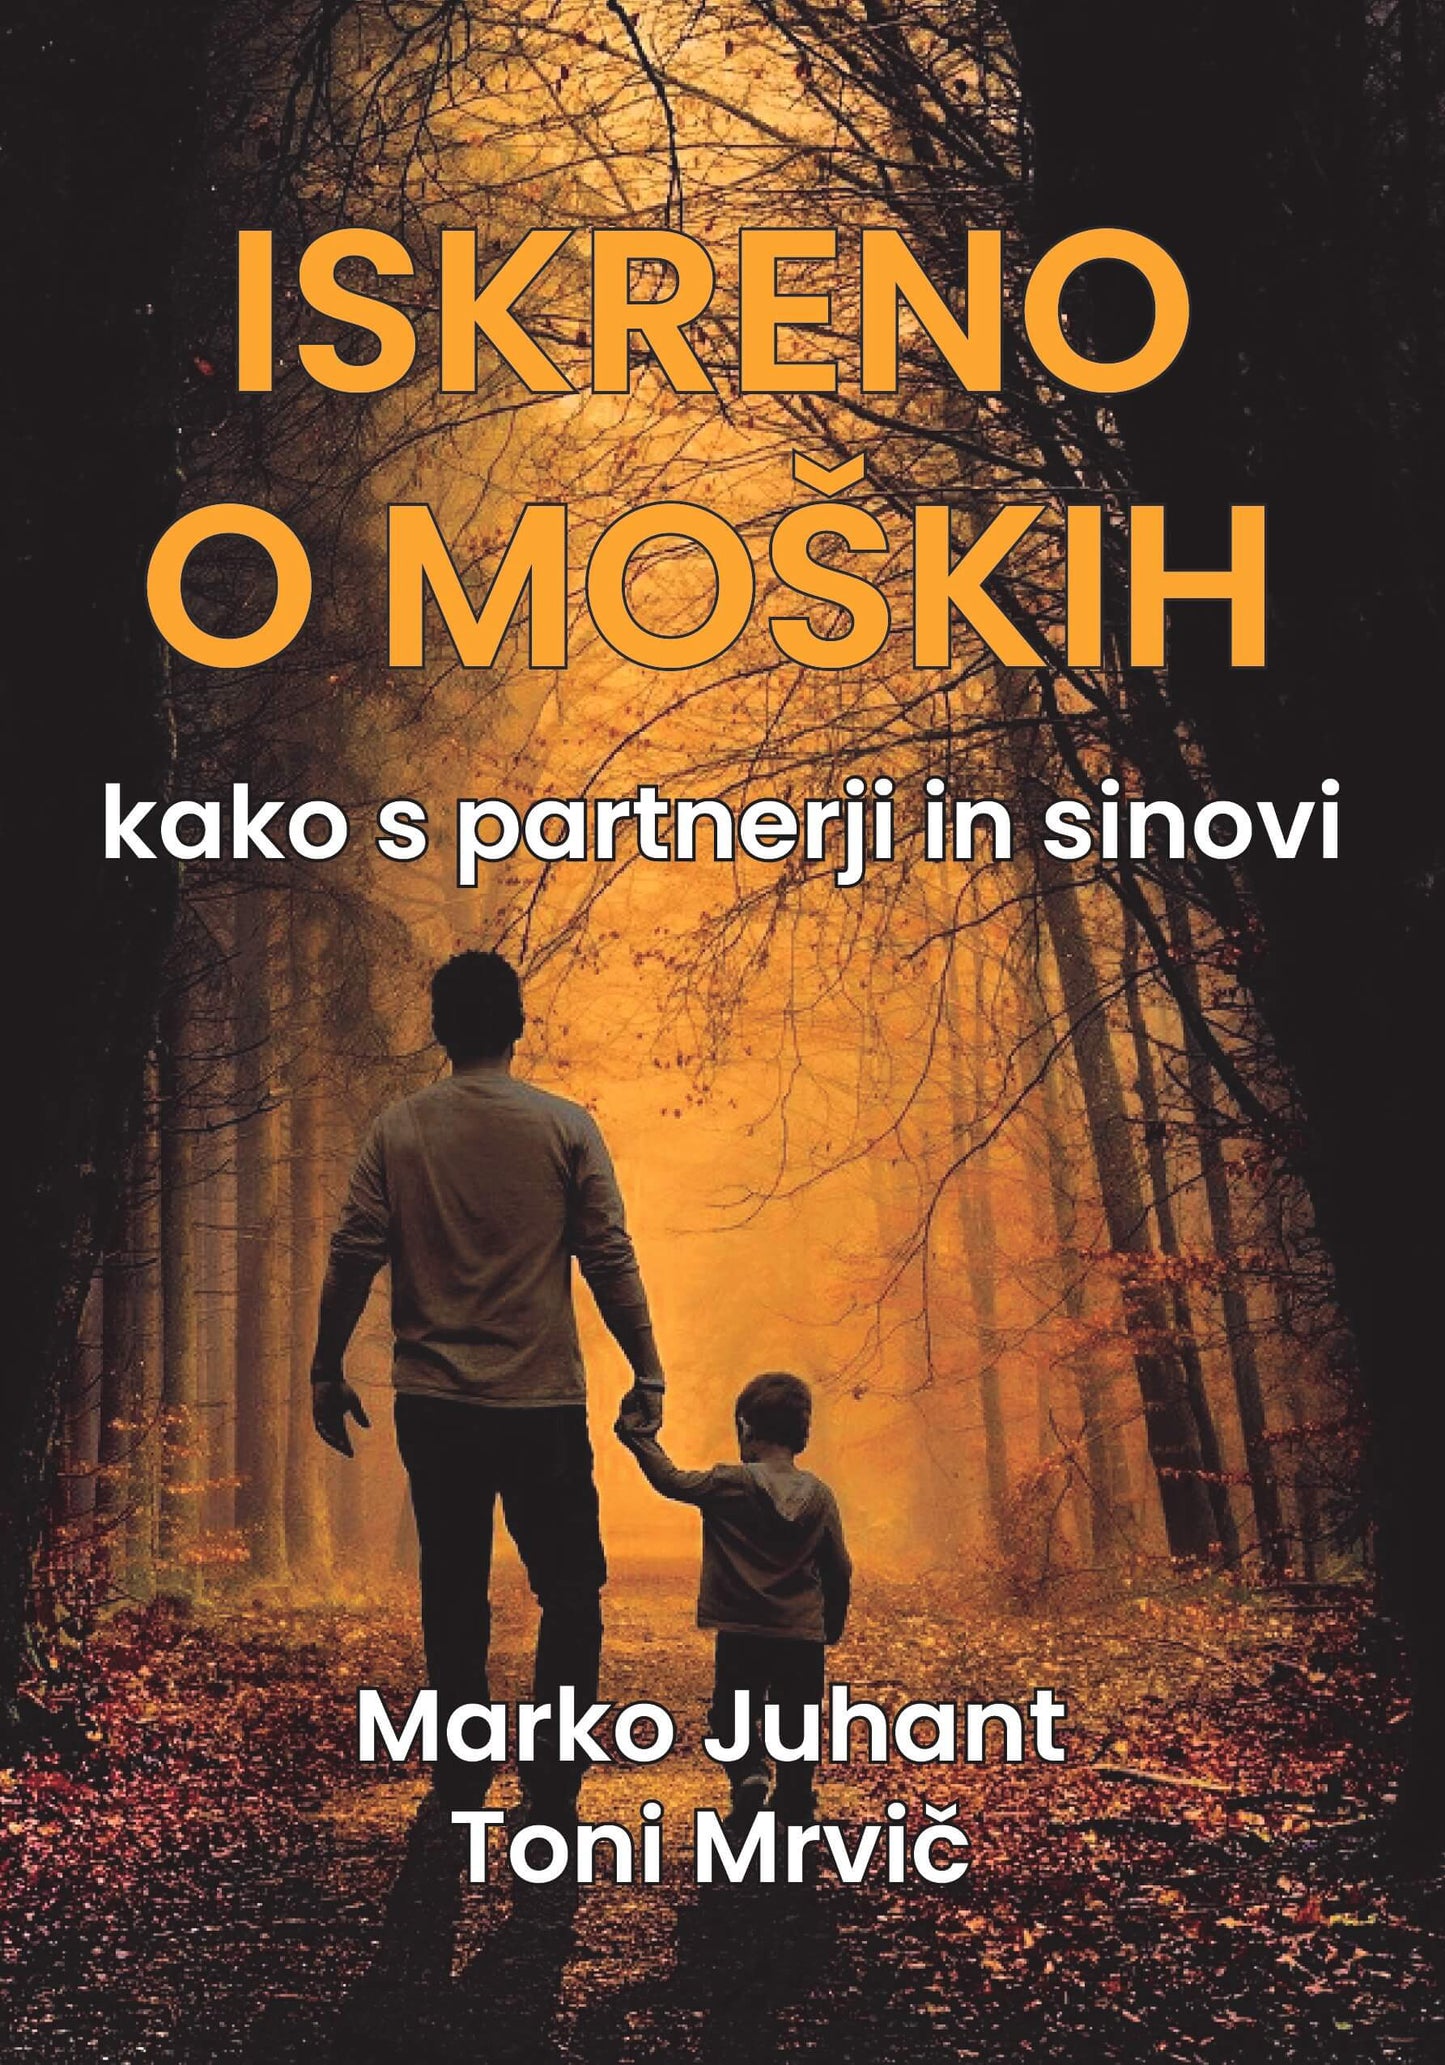 Iskreno o moških - kako s partnerji in sinovi (zvočna knjiga) - Orton eknjiga Marko Juhant, Toni Mrvič